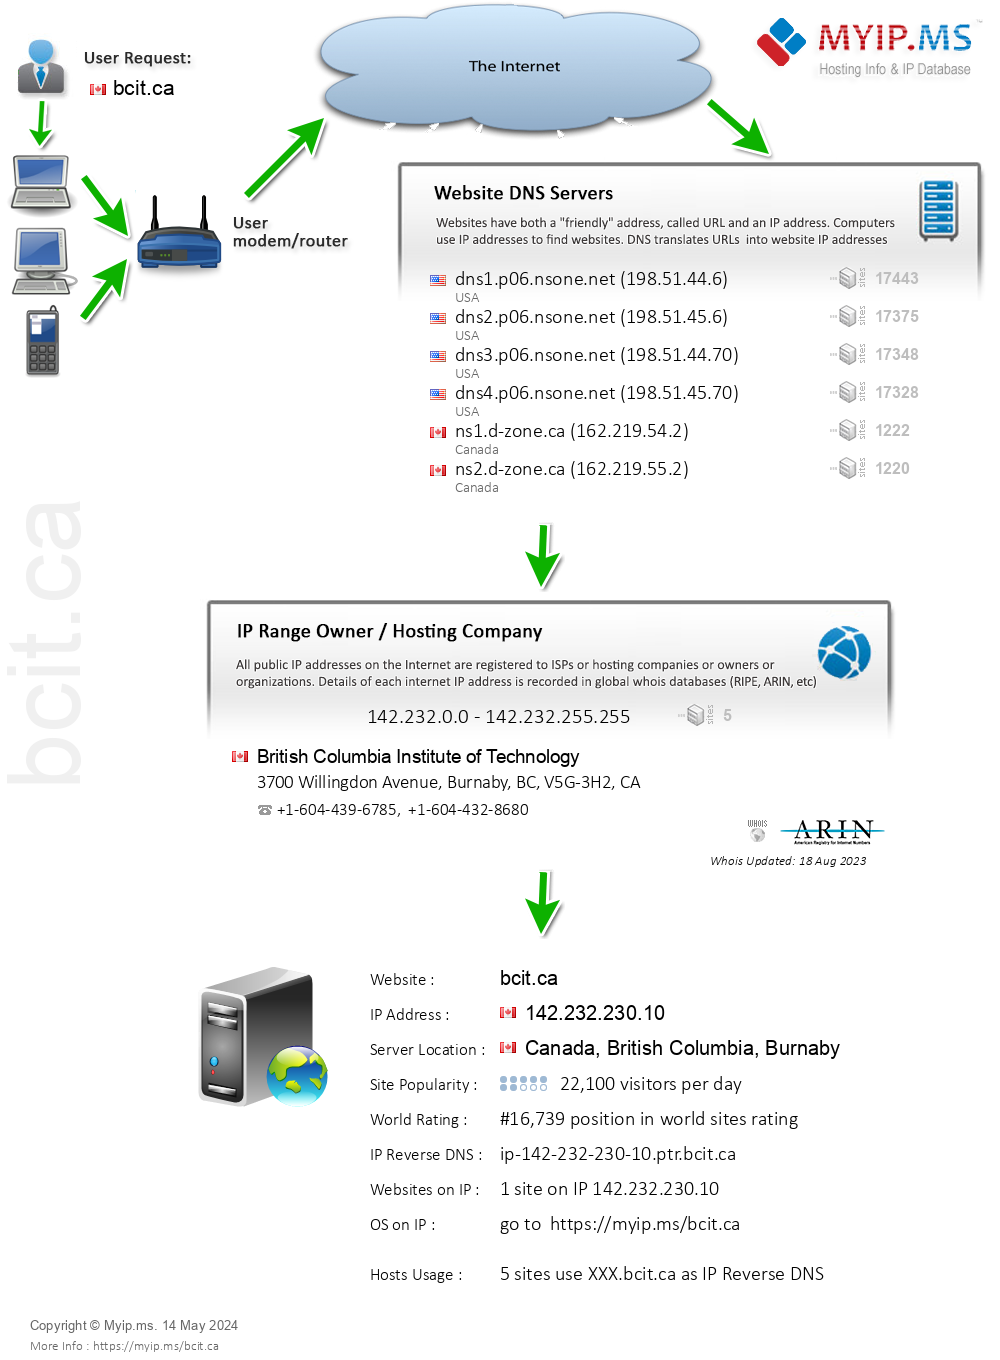 Bcit.ca - Website Hosting Visual IP Diagram